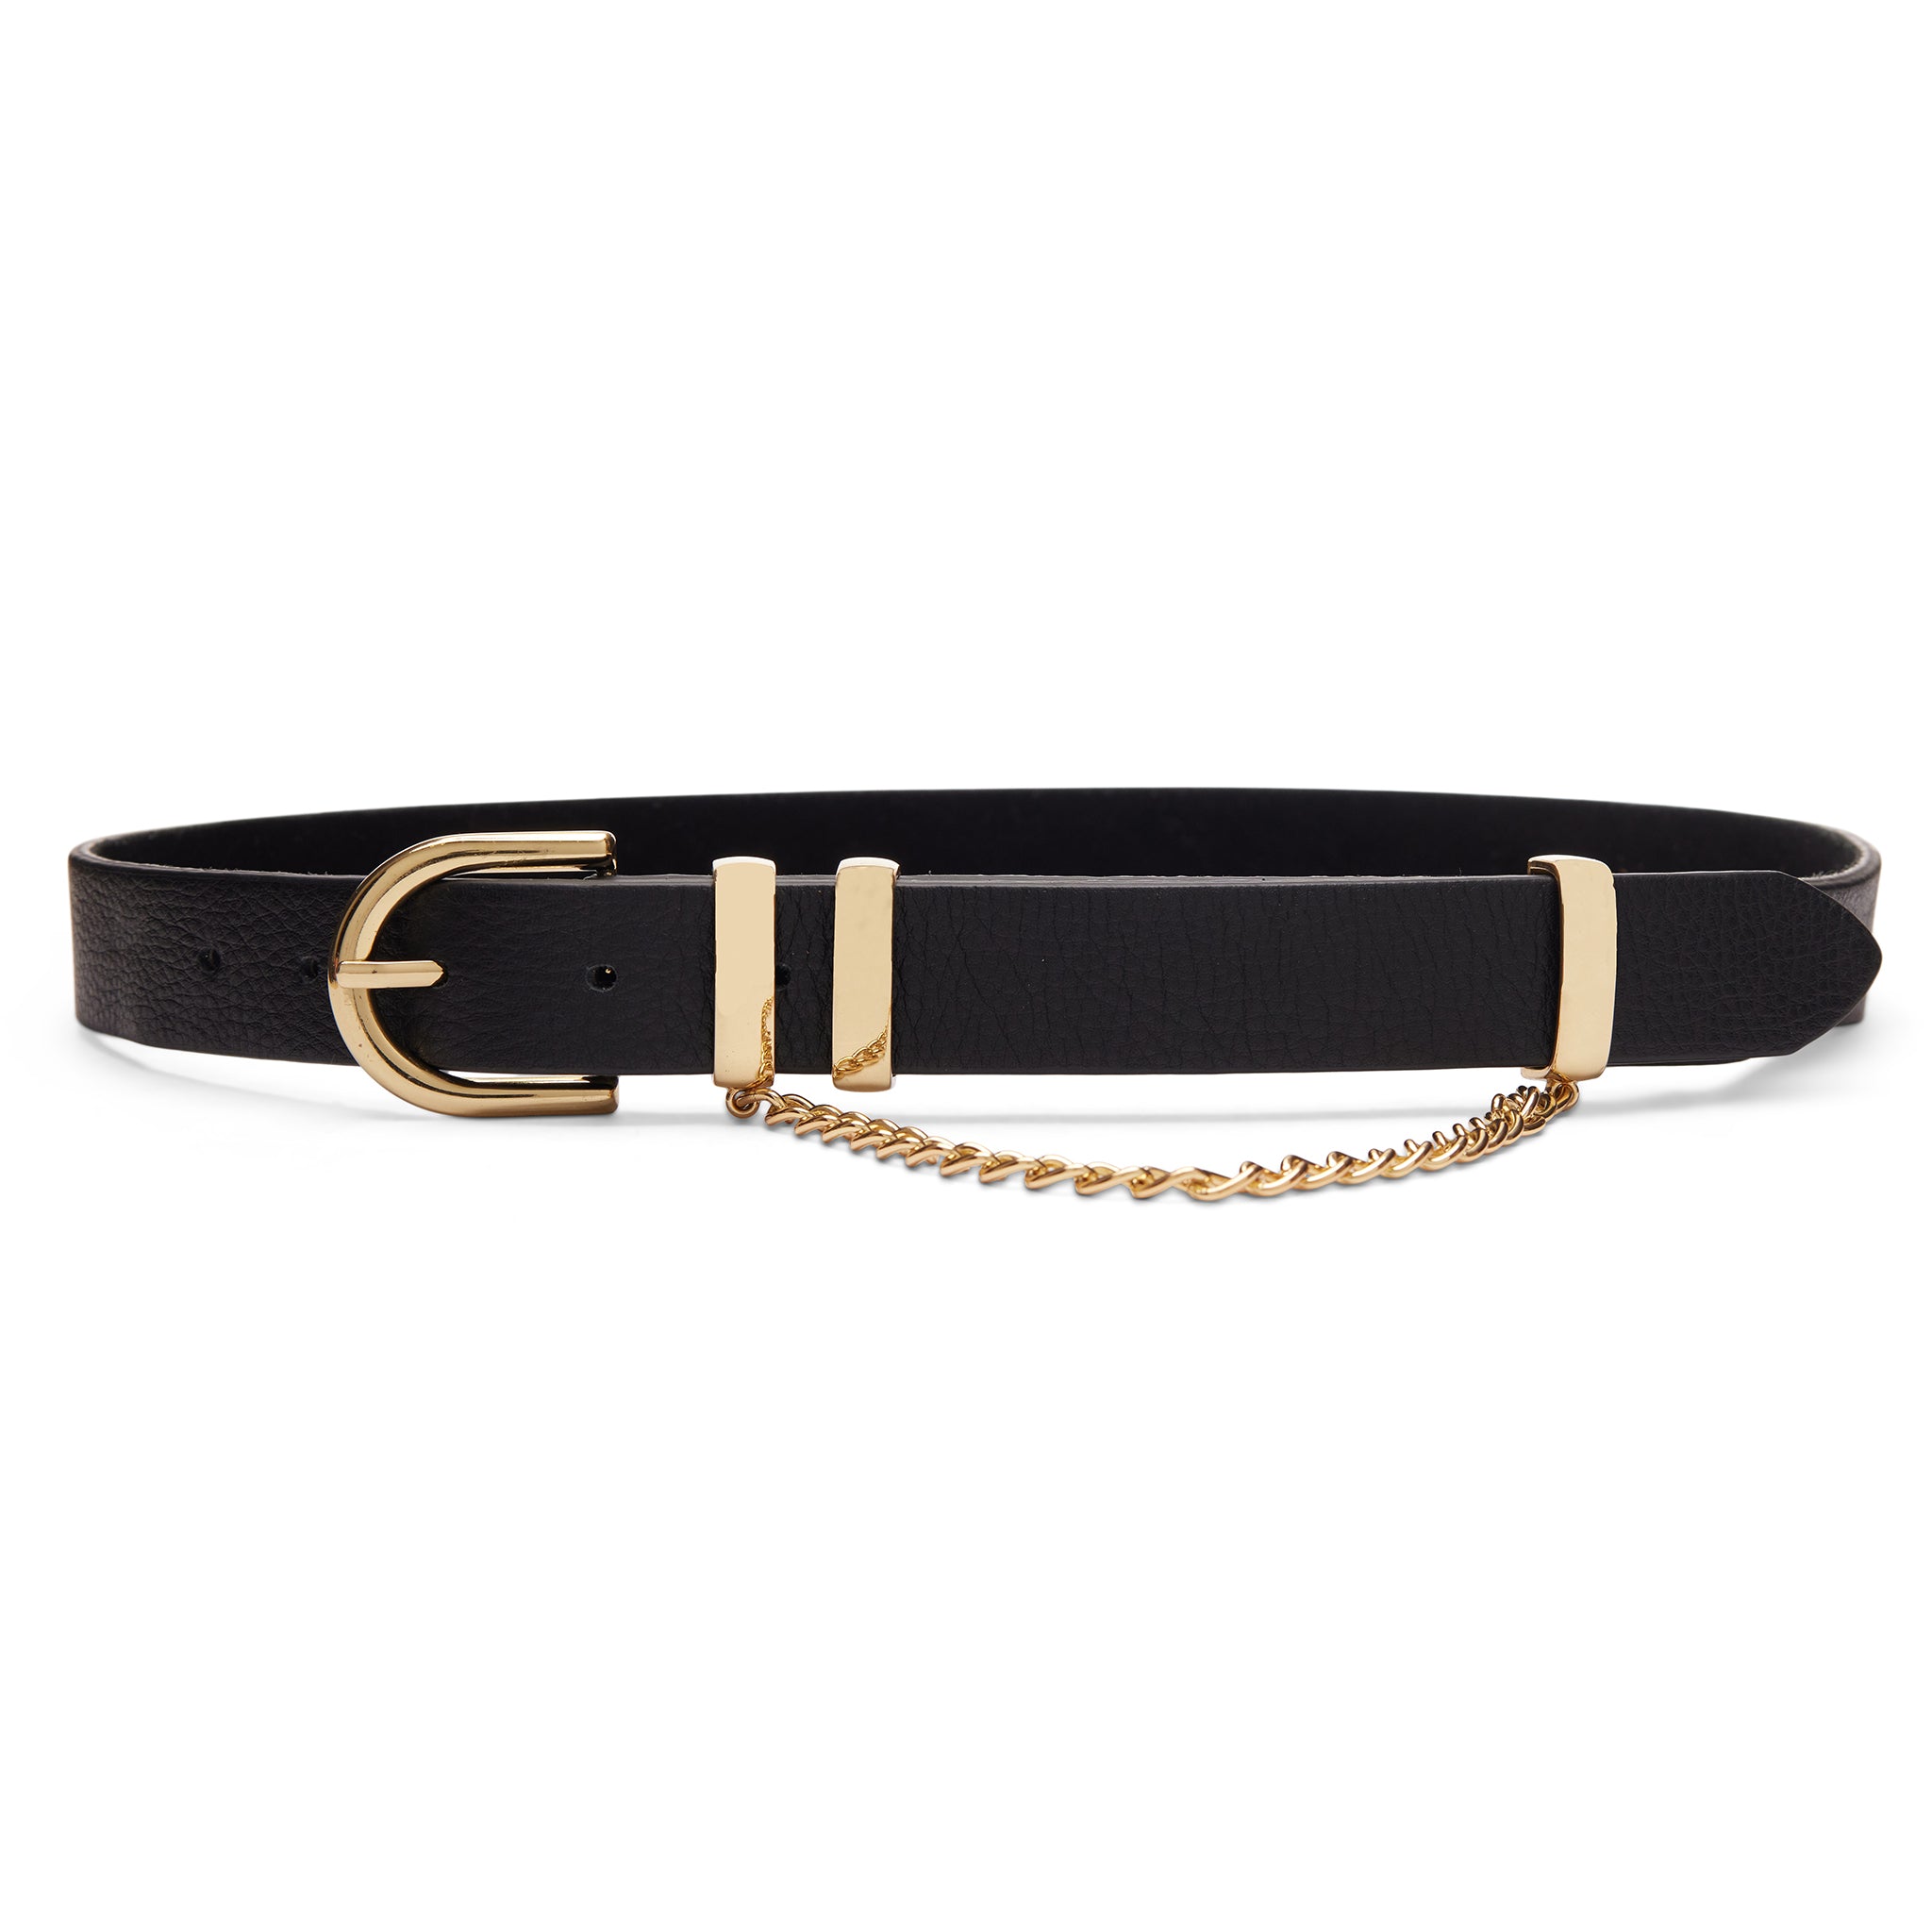 Black Waist Belt With Gold Chain Detail